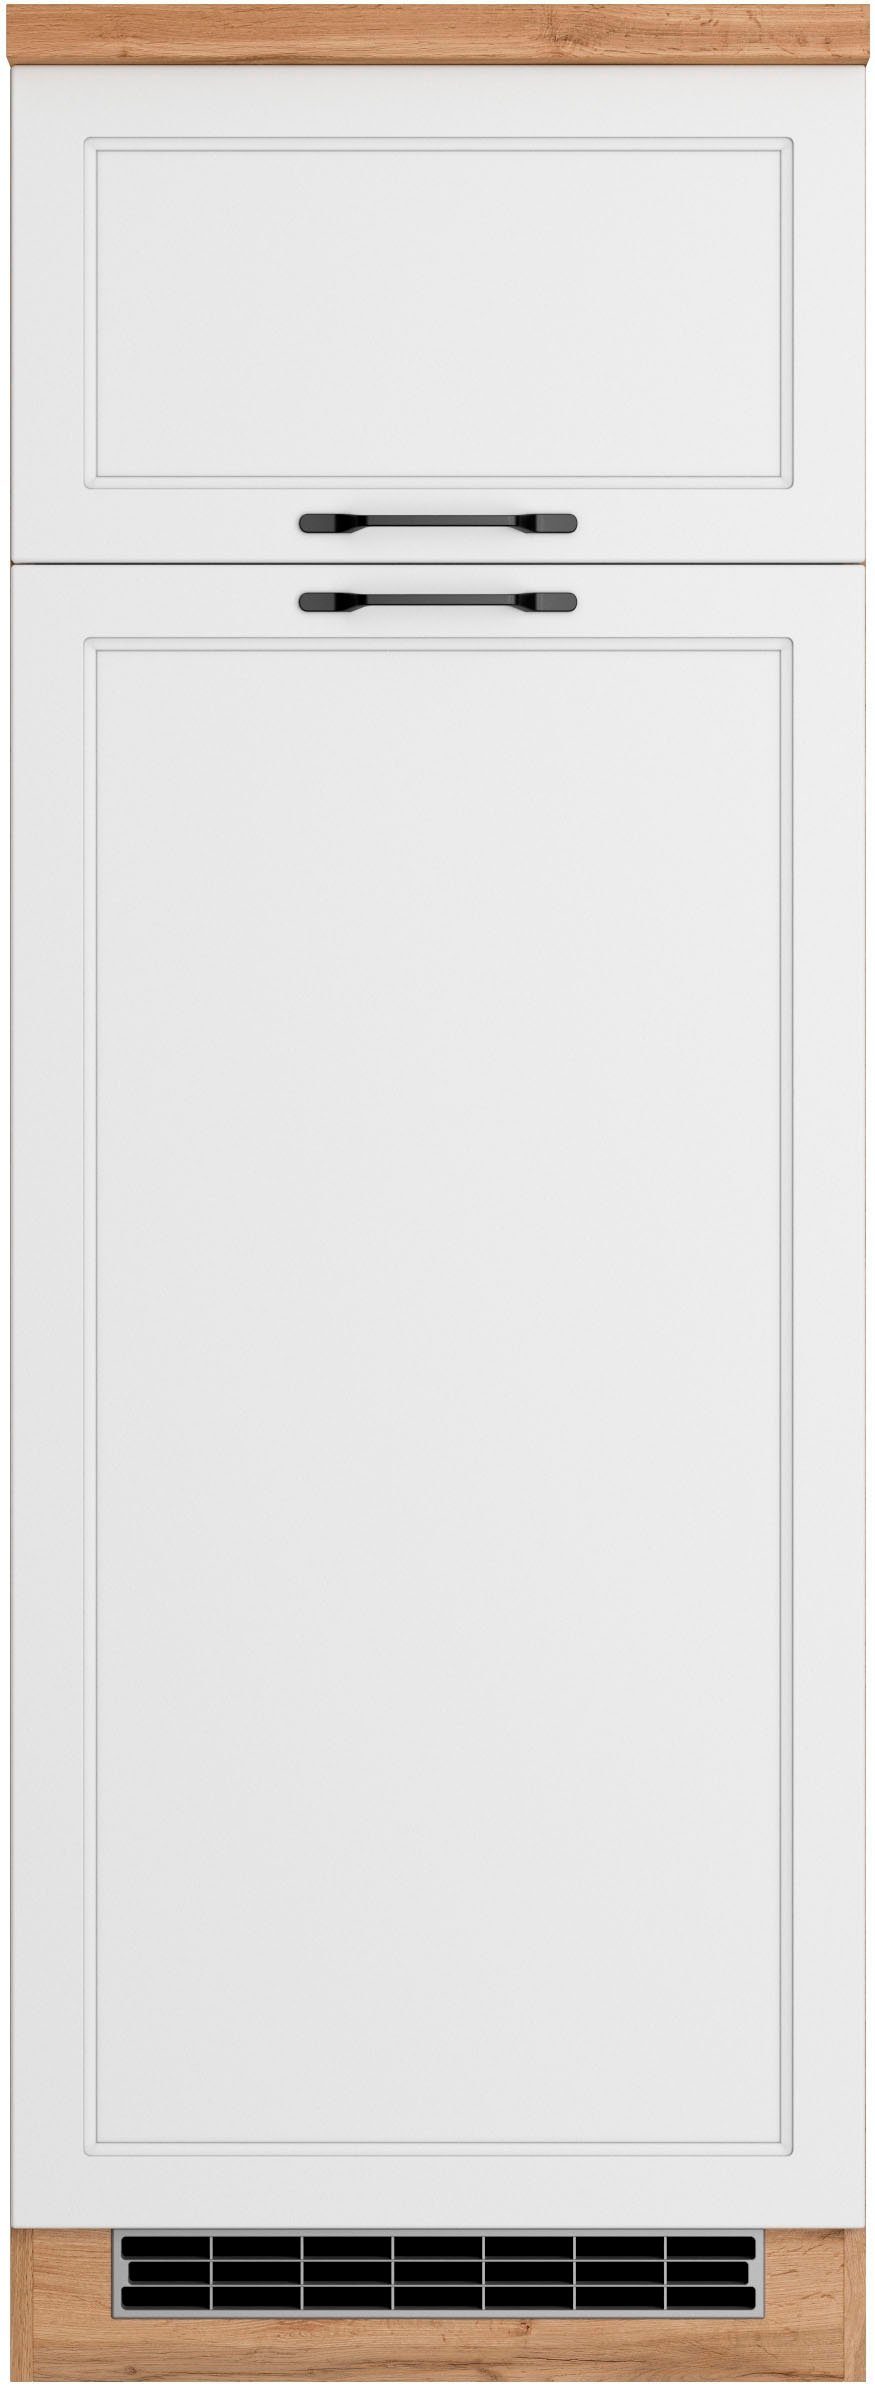 HELD MÖBEL Kühlumbauschrank Lana Breite 60 cm, Passend für alle  Standard-Einbauhlschränke (144 cm hoch)